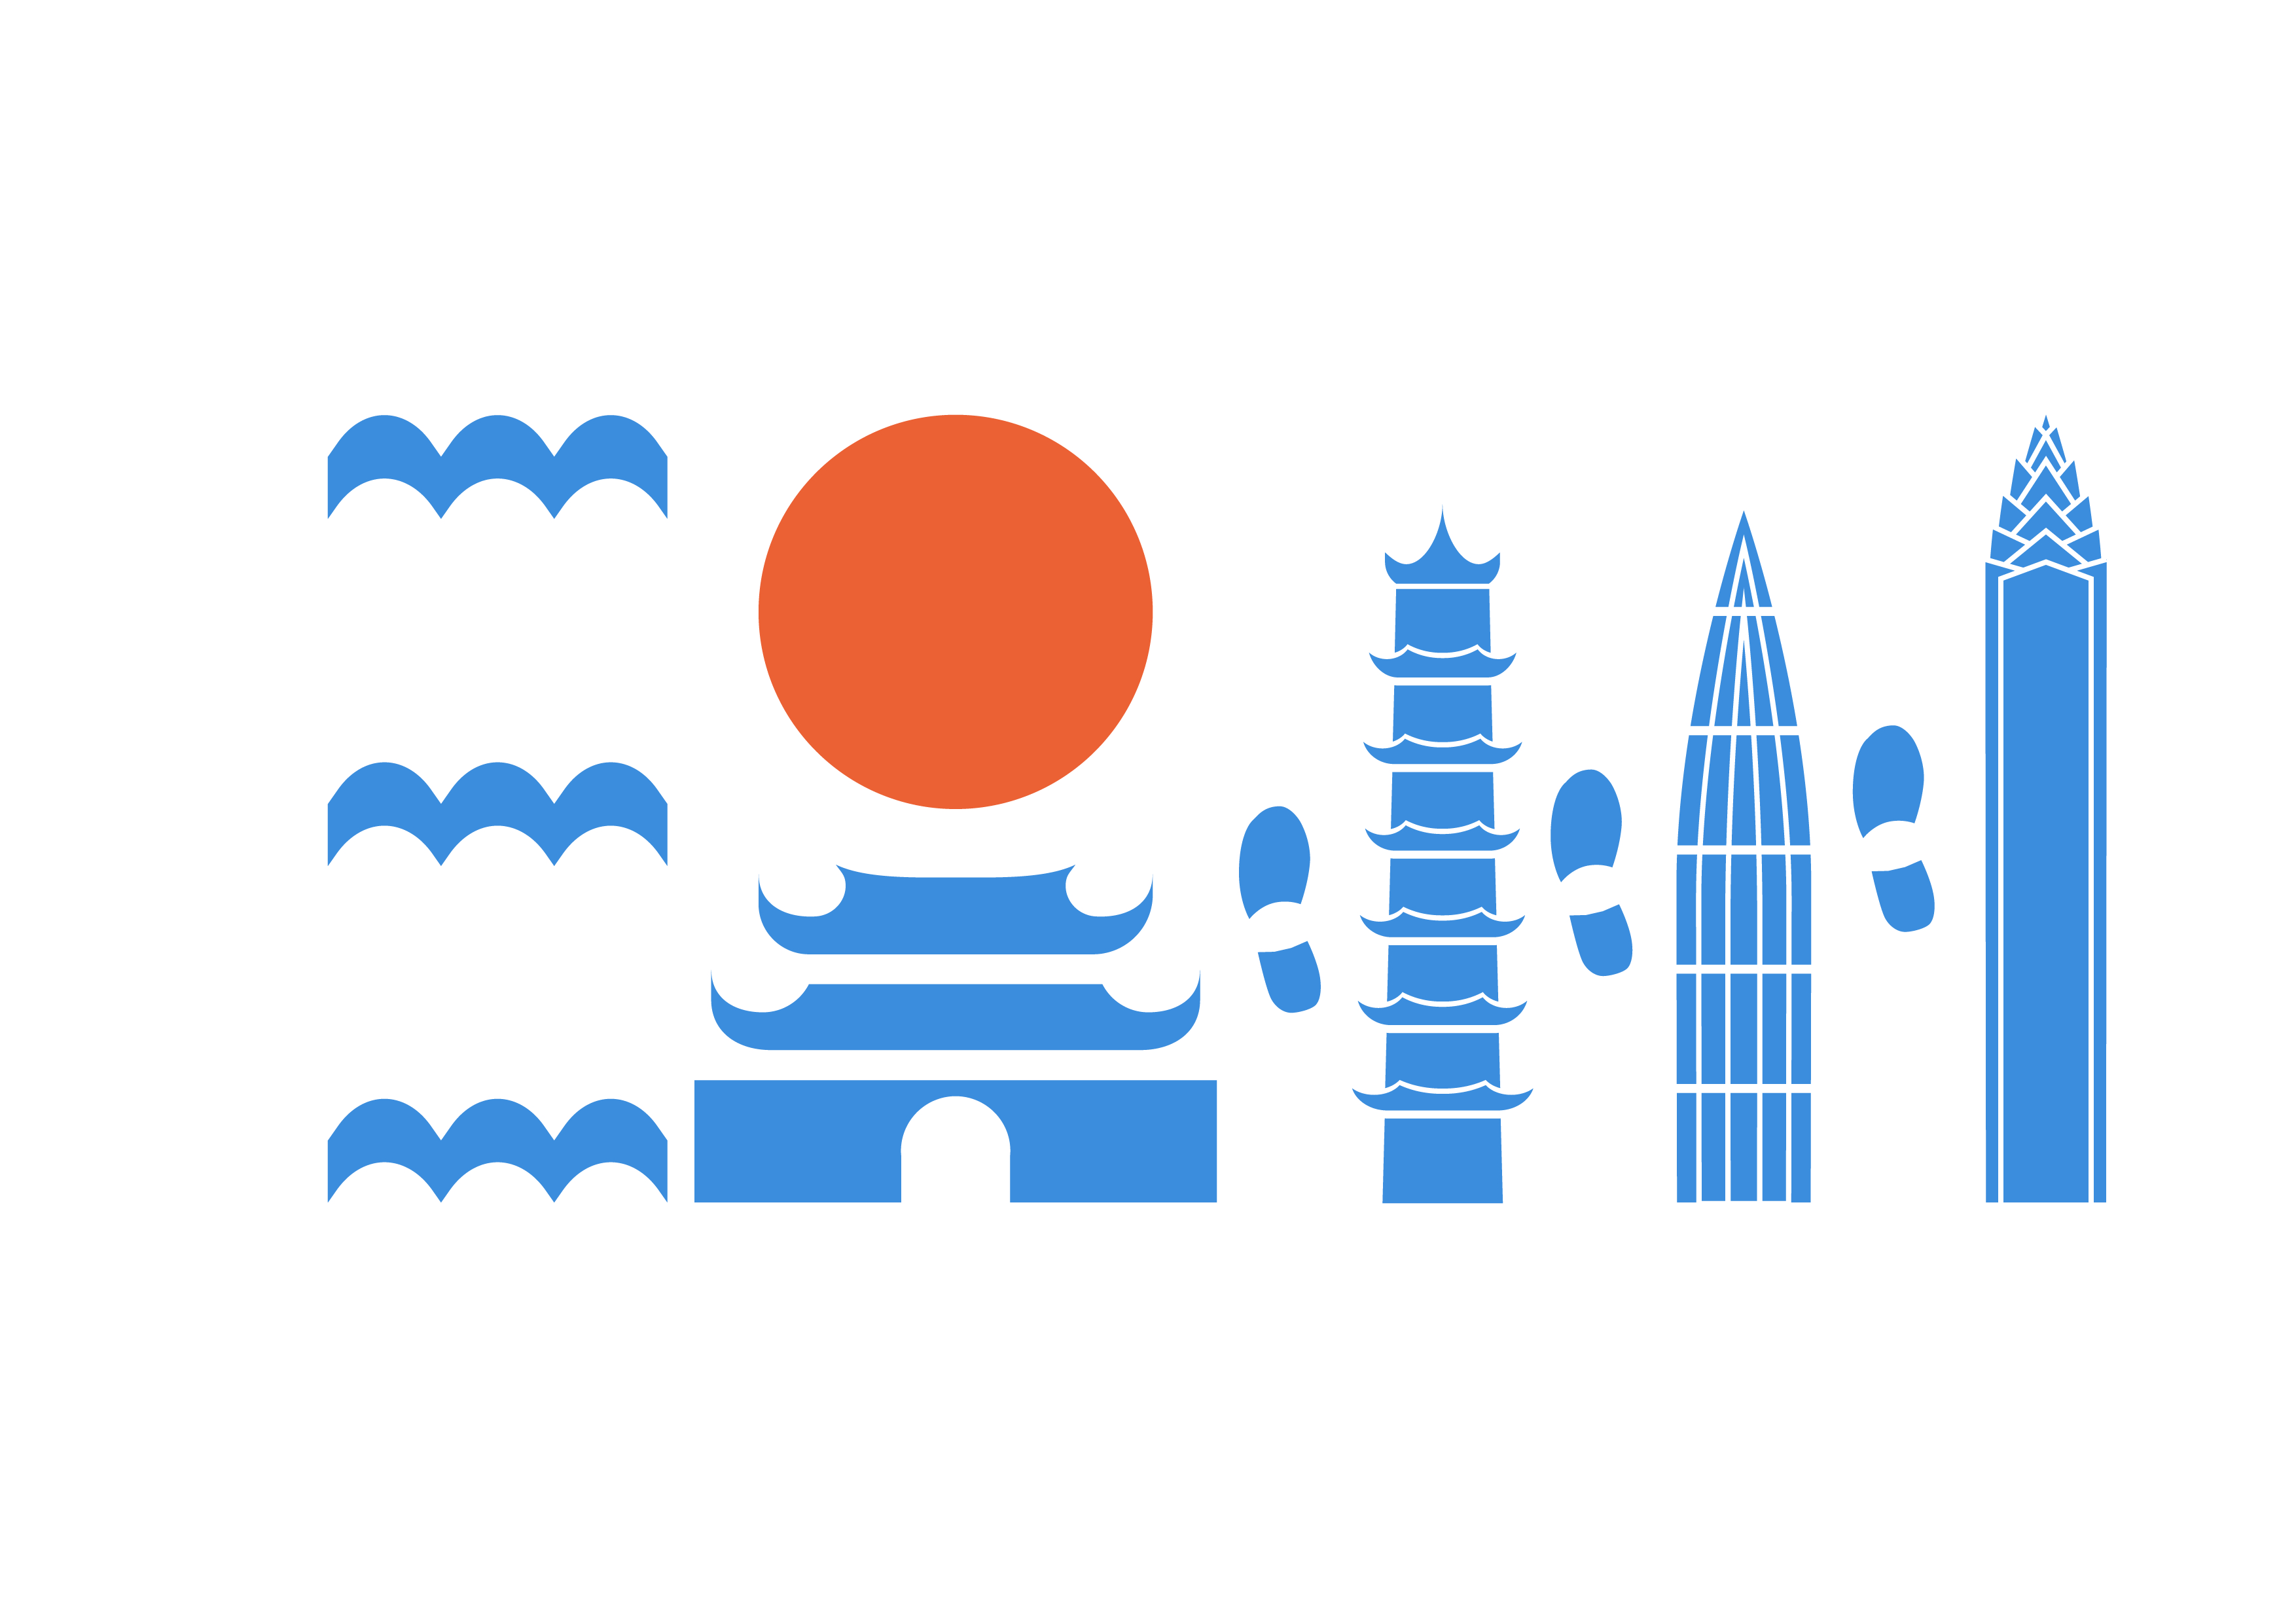 温州城市形象标志图片